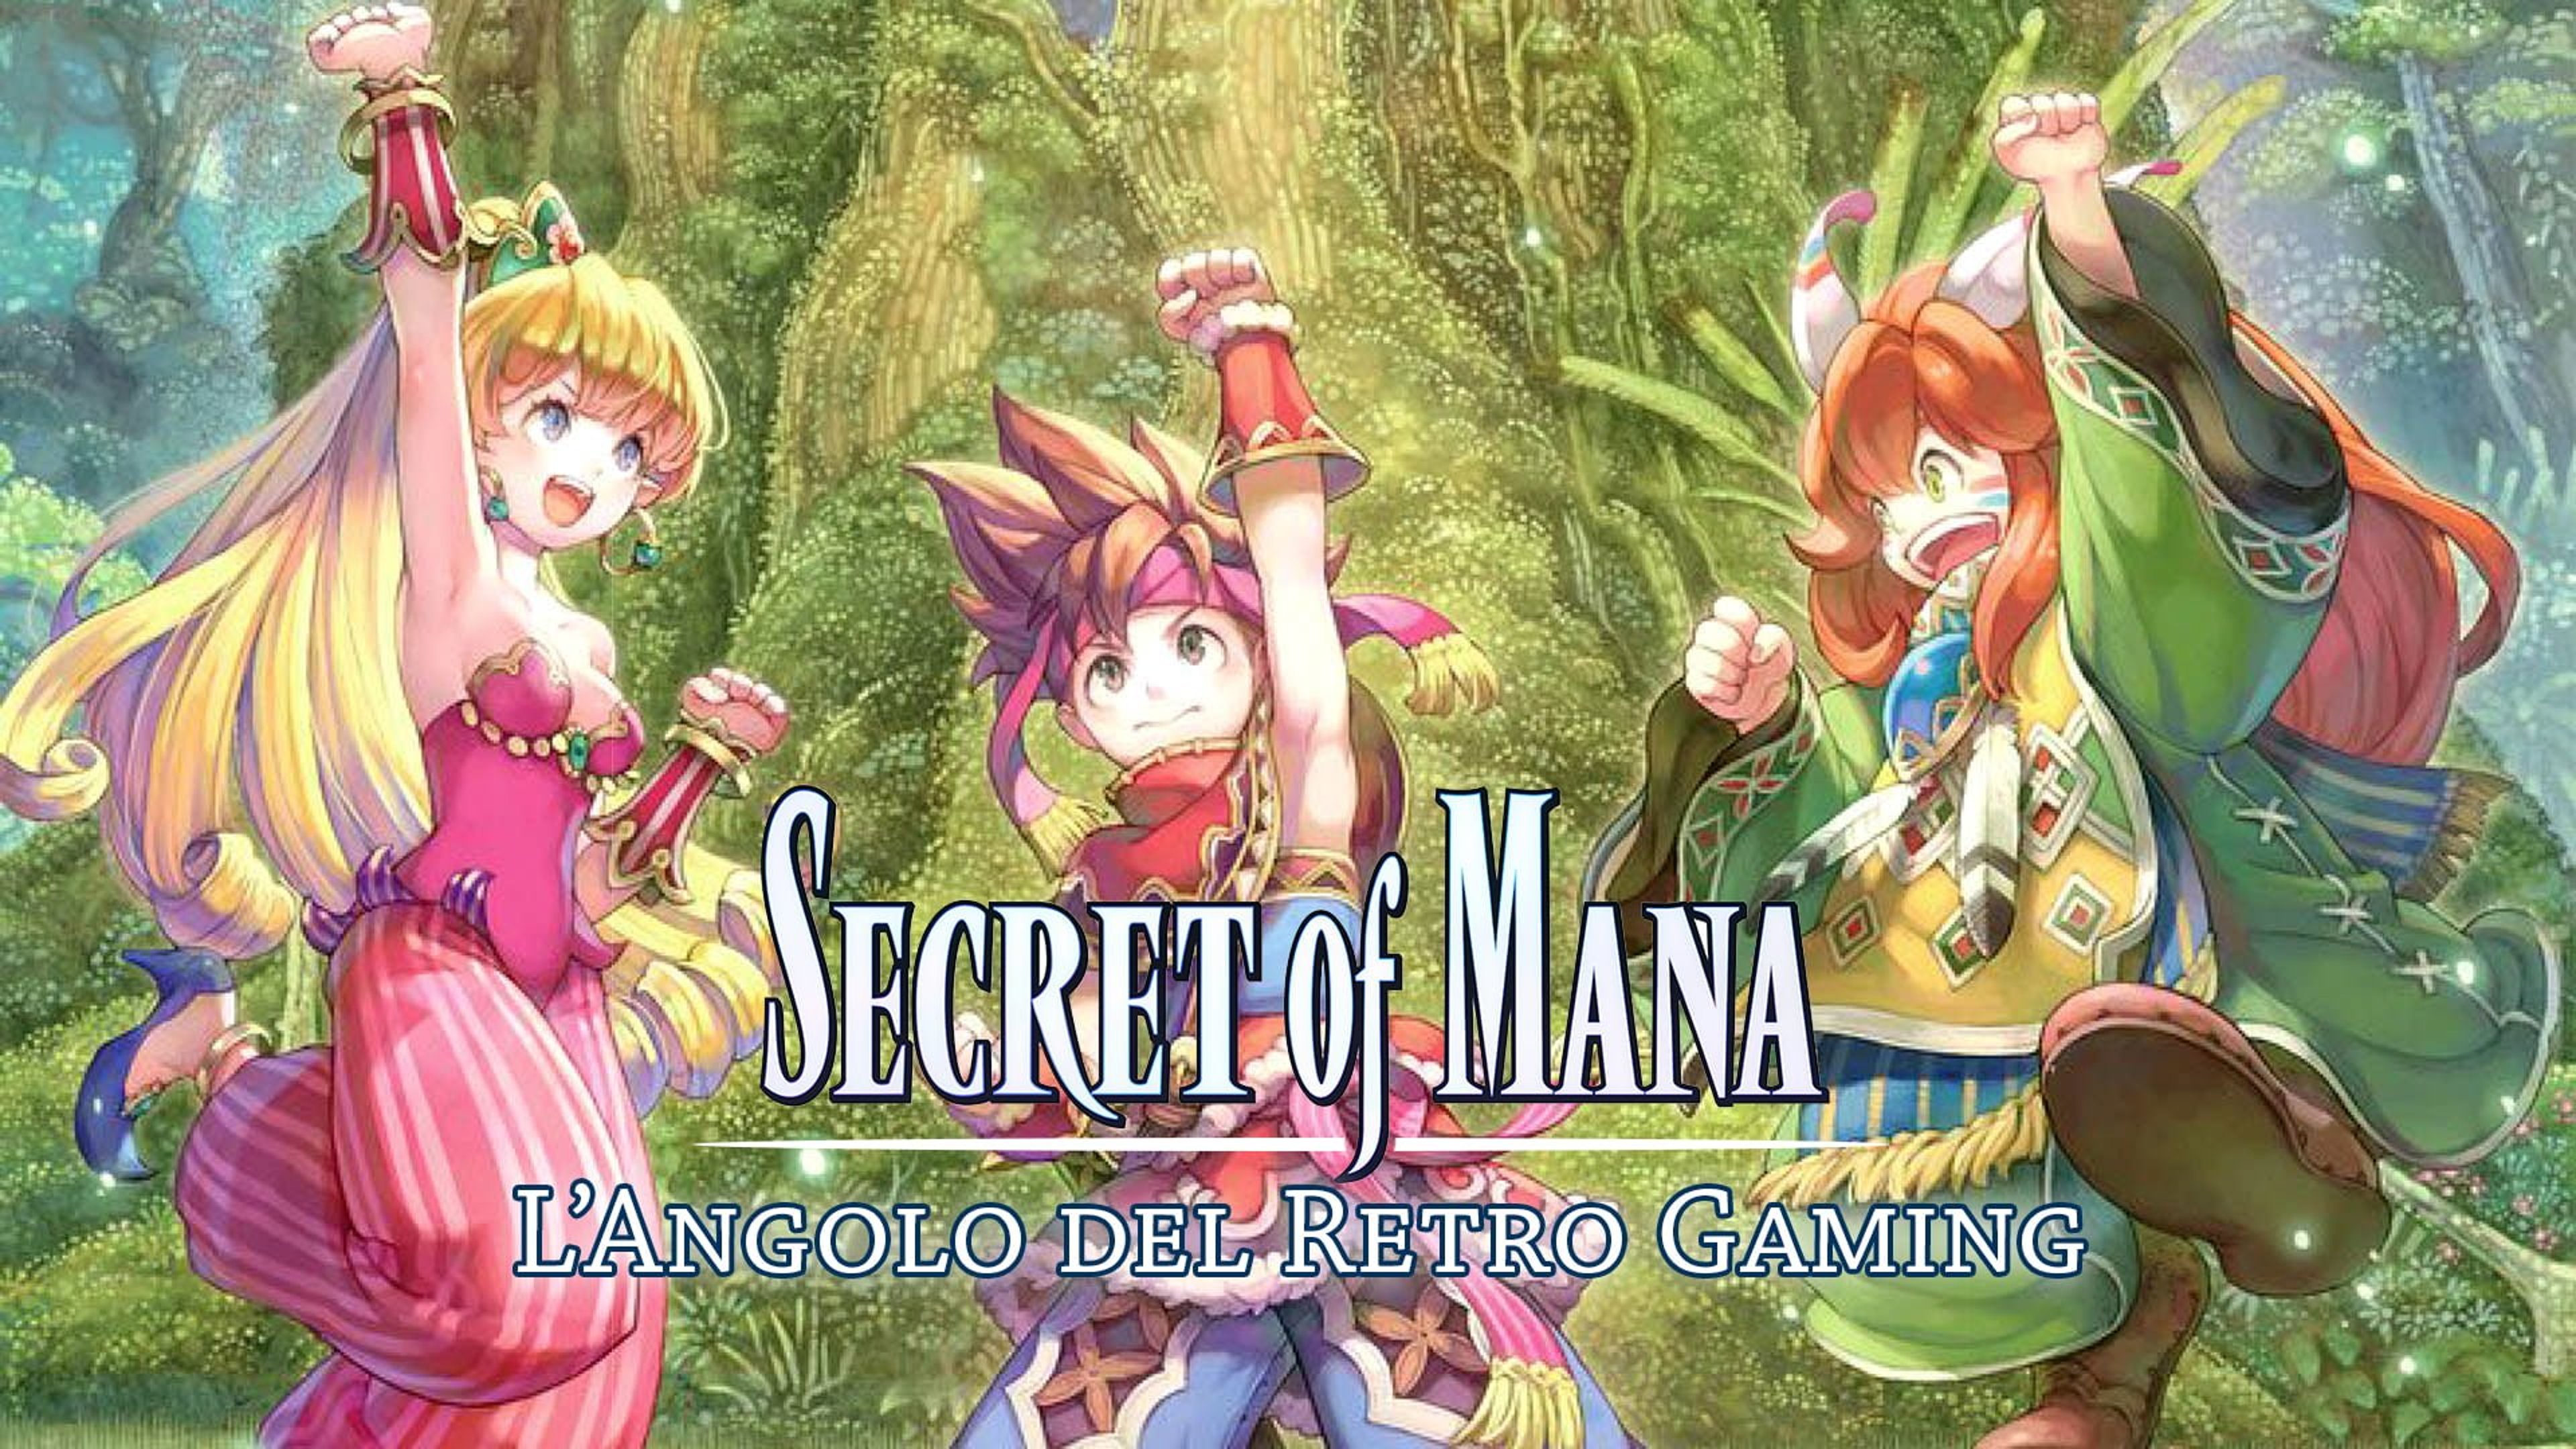 L’Angolo del RetroGaming: Secret of Mana